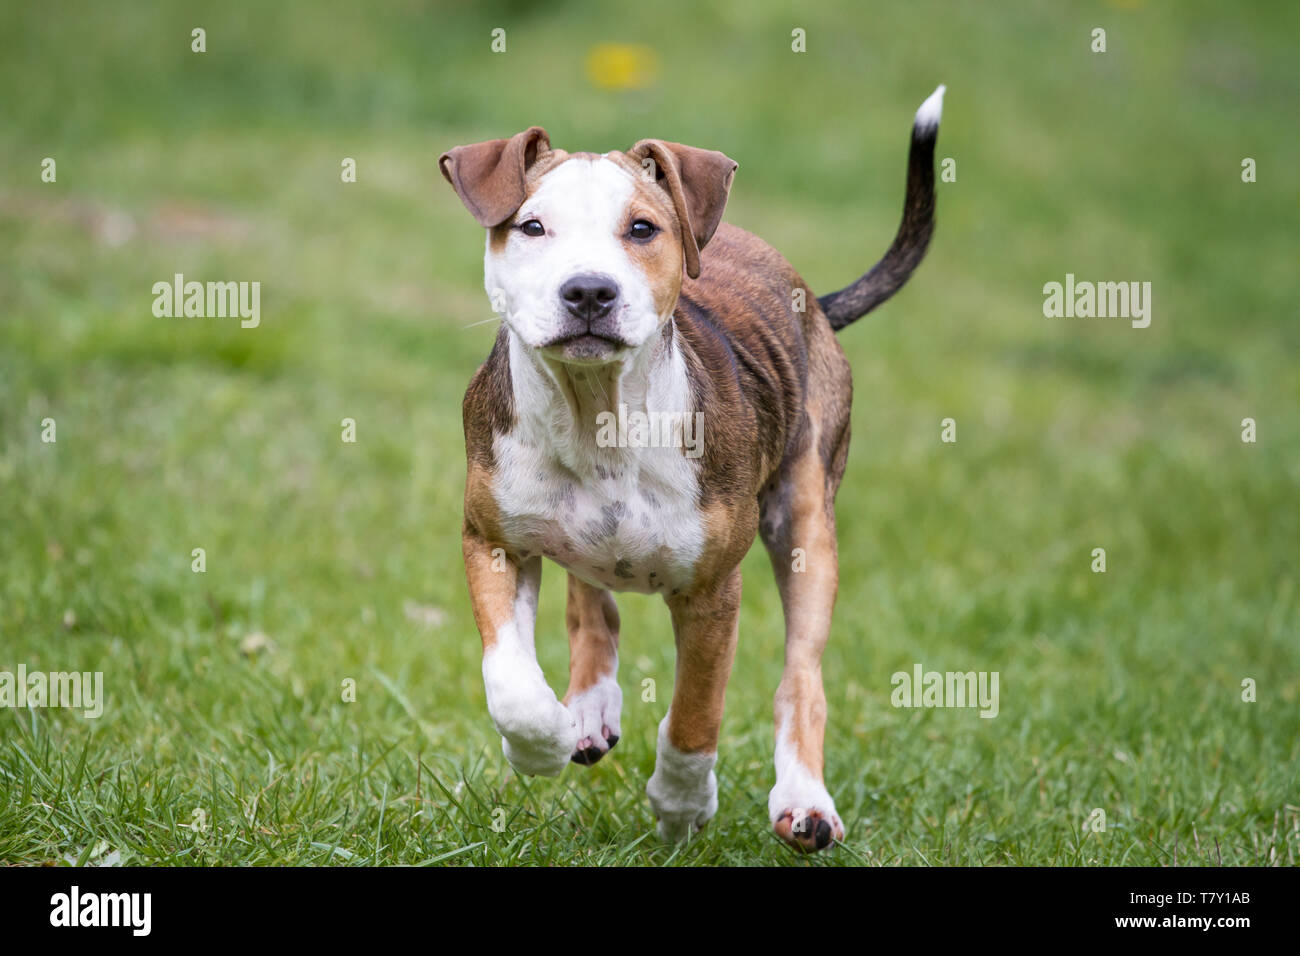 Cucciolo Bulldog bianco marrone che corre su un prato Foto Stock